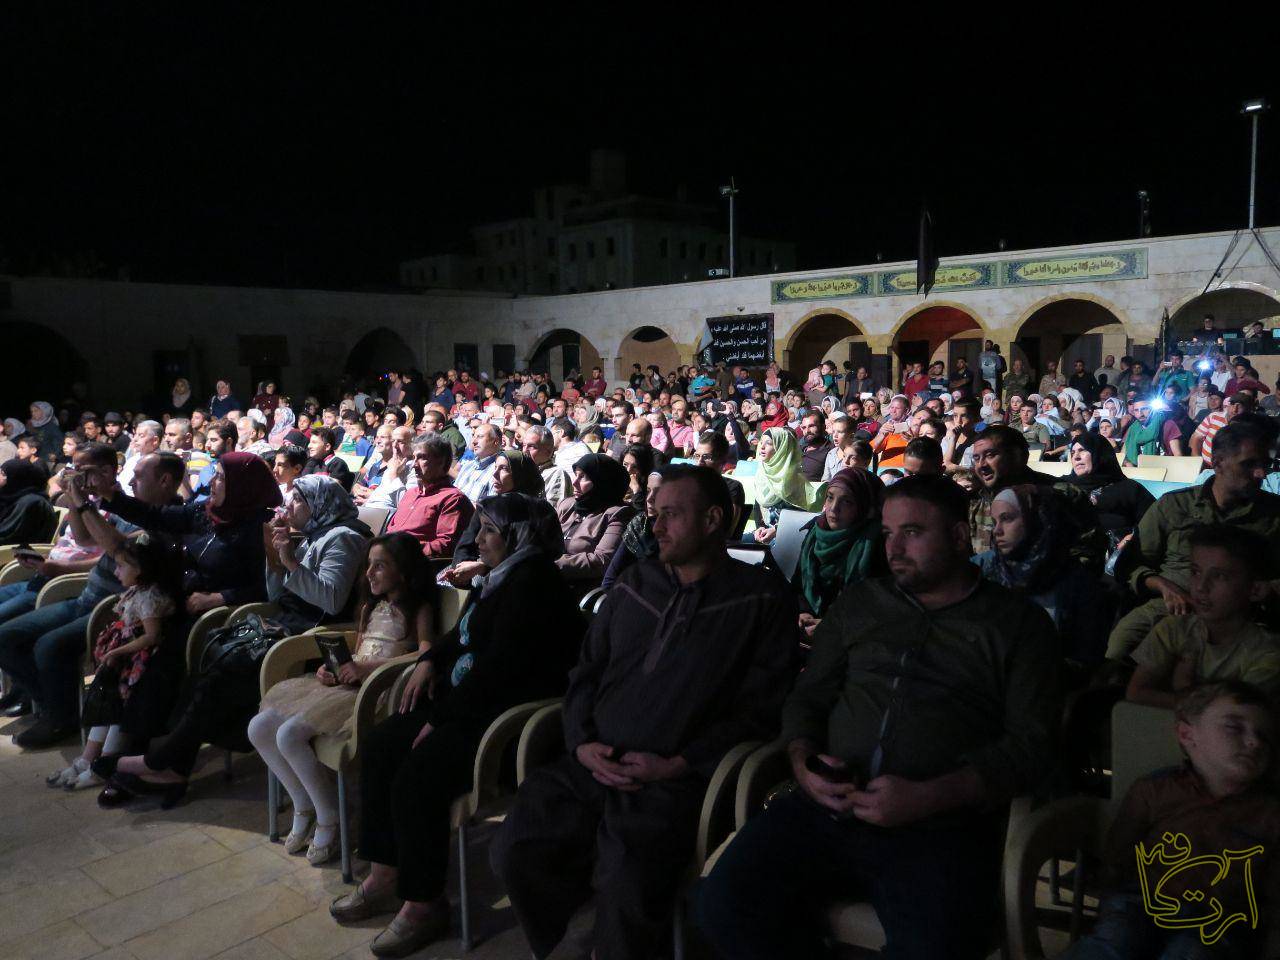 تئاتر سمیر الطویل  مروان غربوان  یاسین عدس  حسان الفیصل   محمد سقا کورش زارعی حلب  خورشید از حلب طلوع می کند